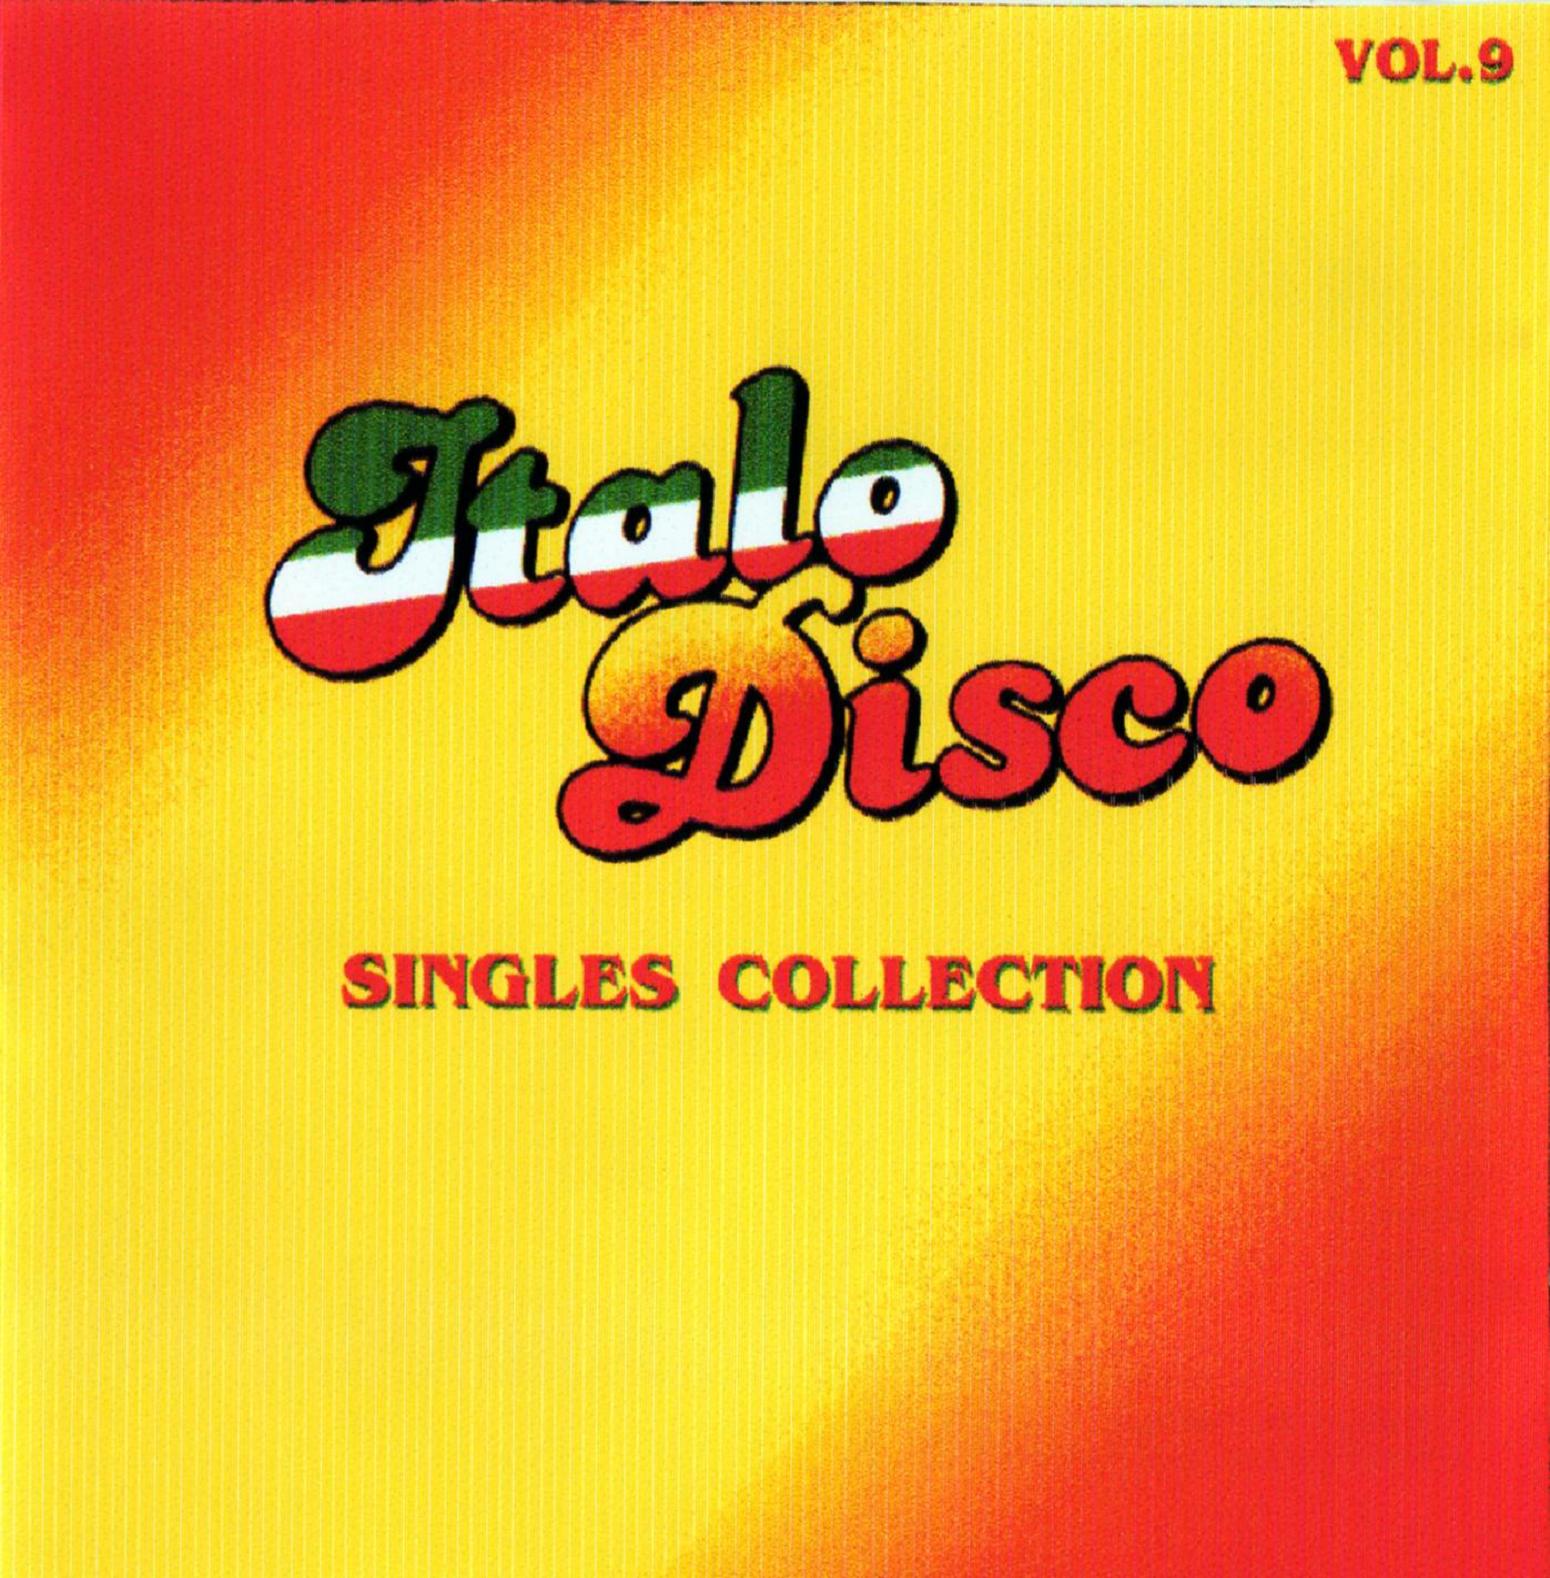 Итальянское диско оригинал. Итало диско. The best of Italo Disco обложки. Итальянское диско. Disco обложка.